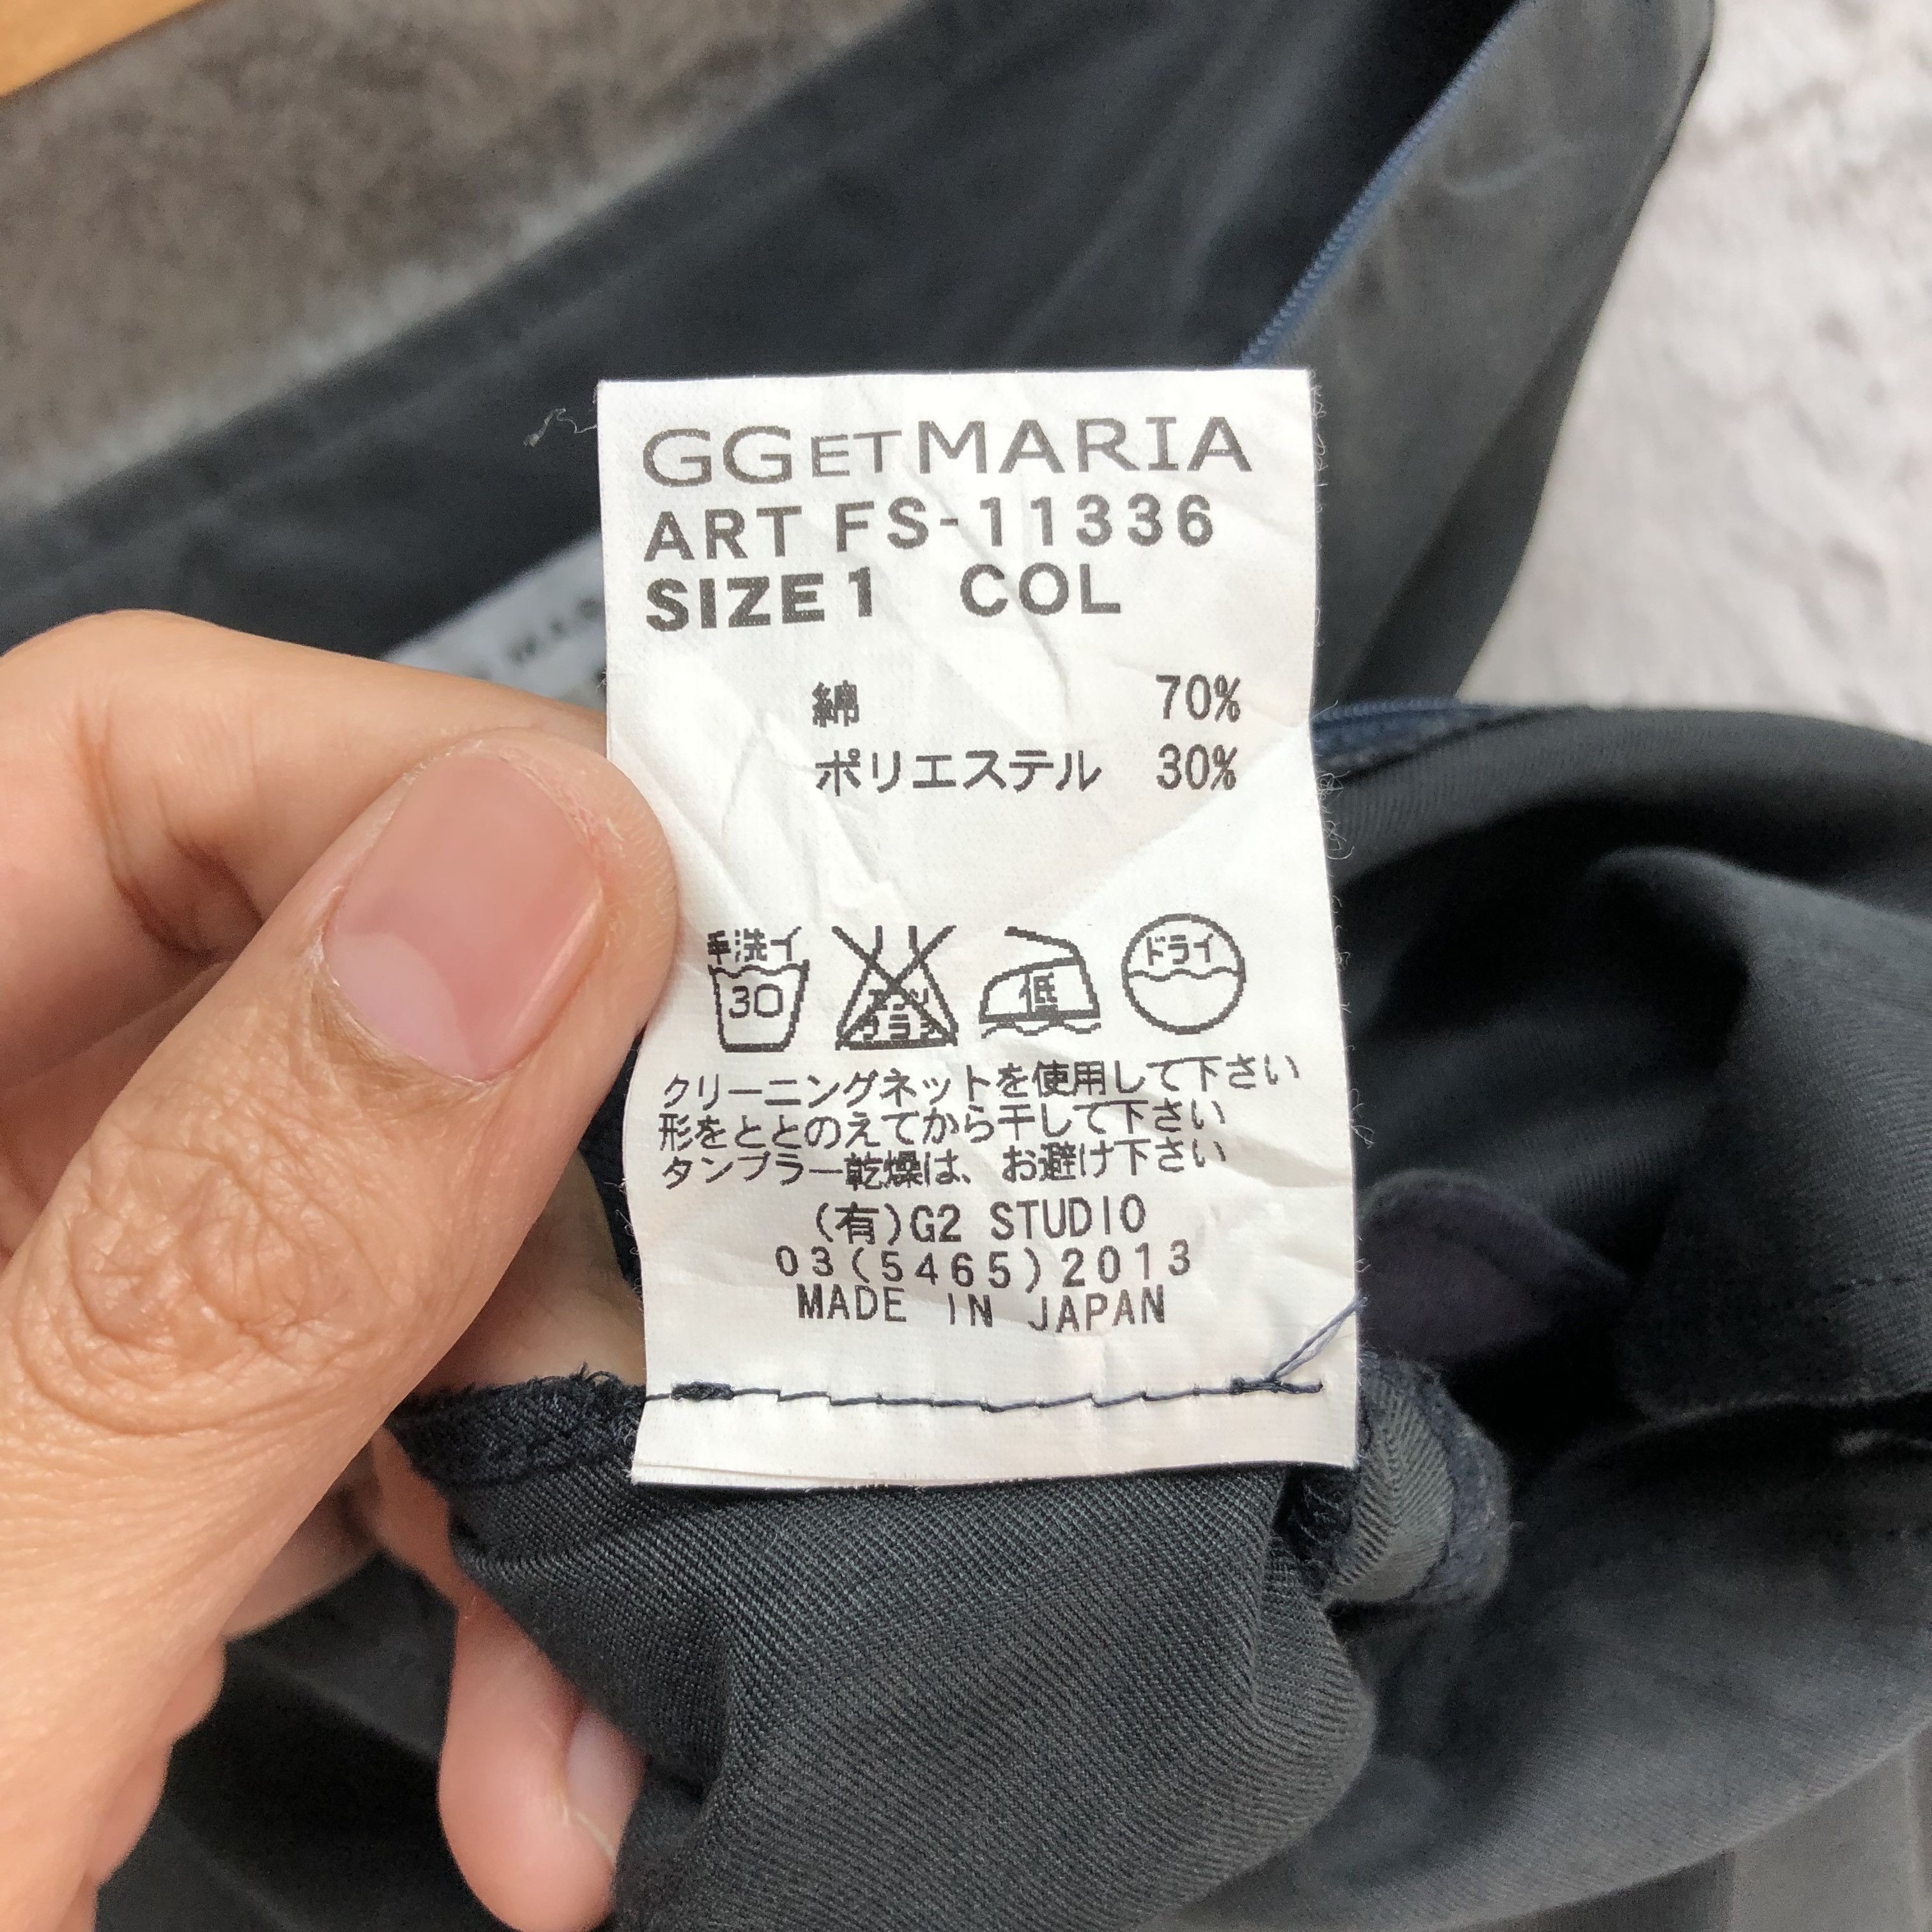 Designer - GG ET MARIA MADE IN JAPAN MINI SKIRTS #6070-216 - 8